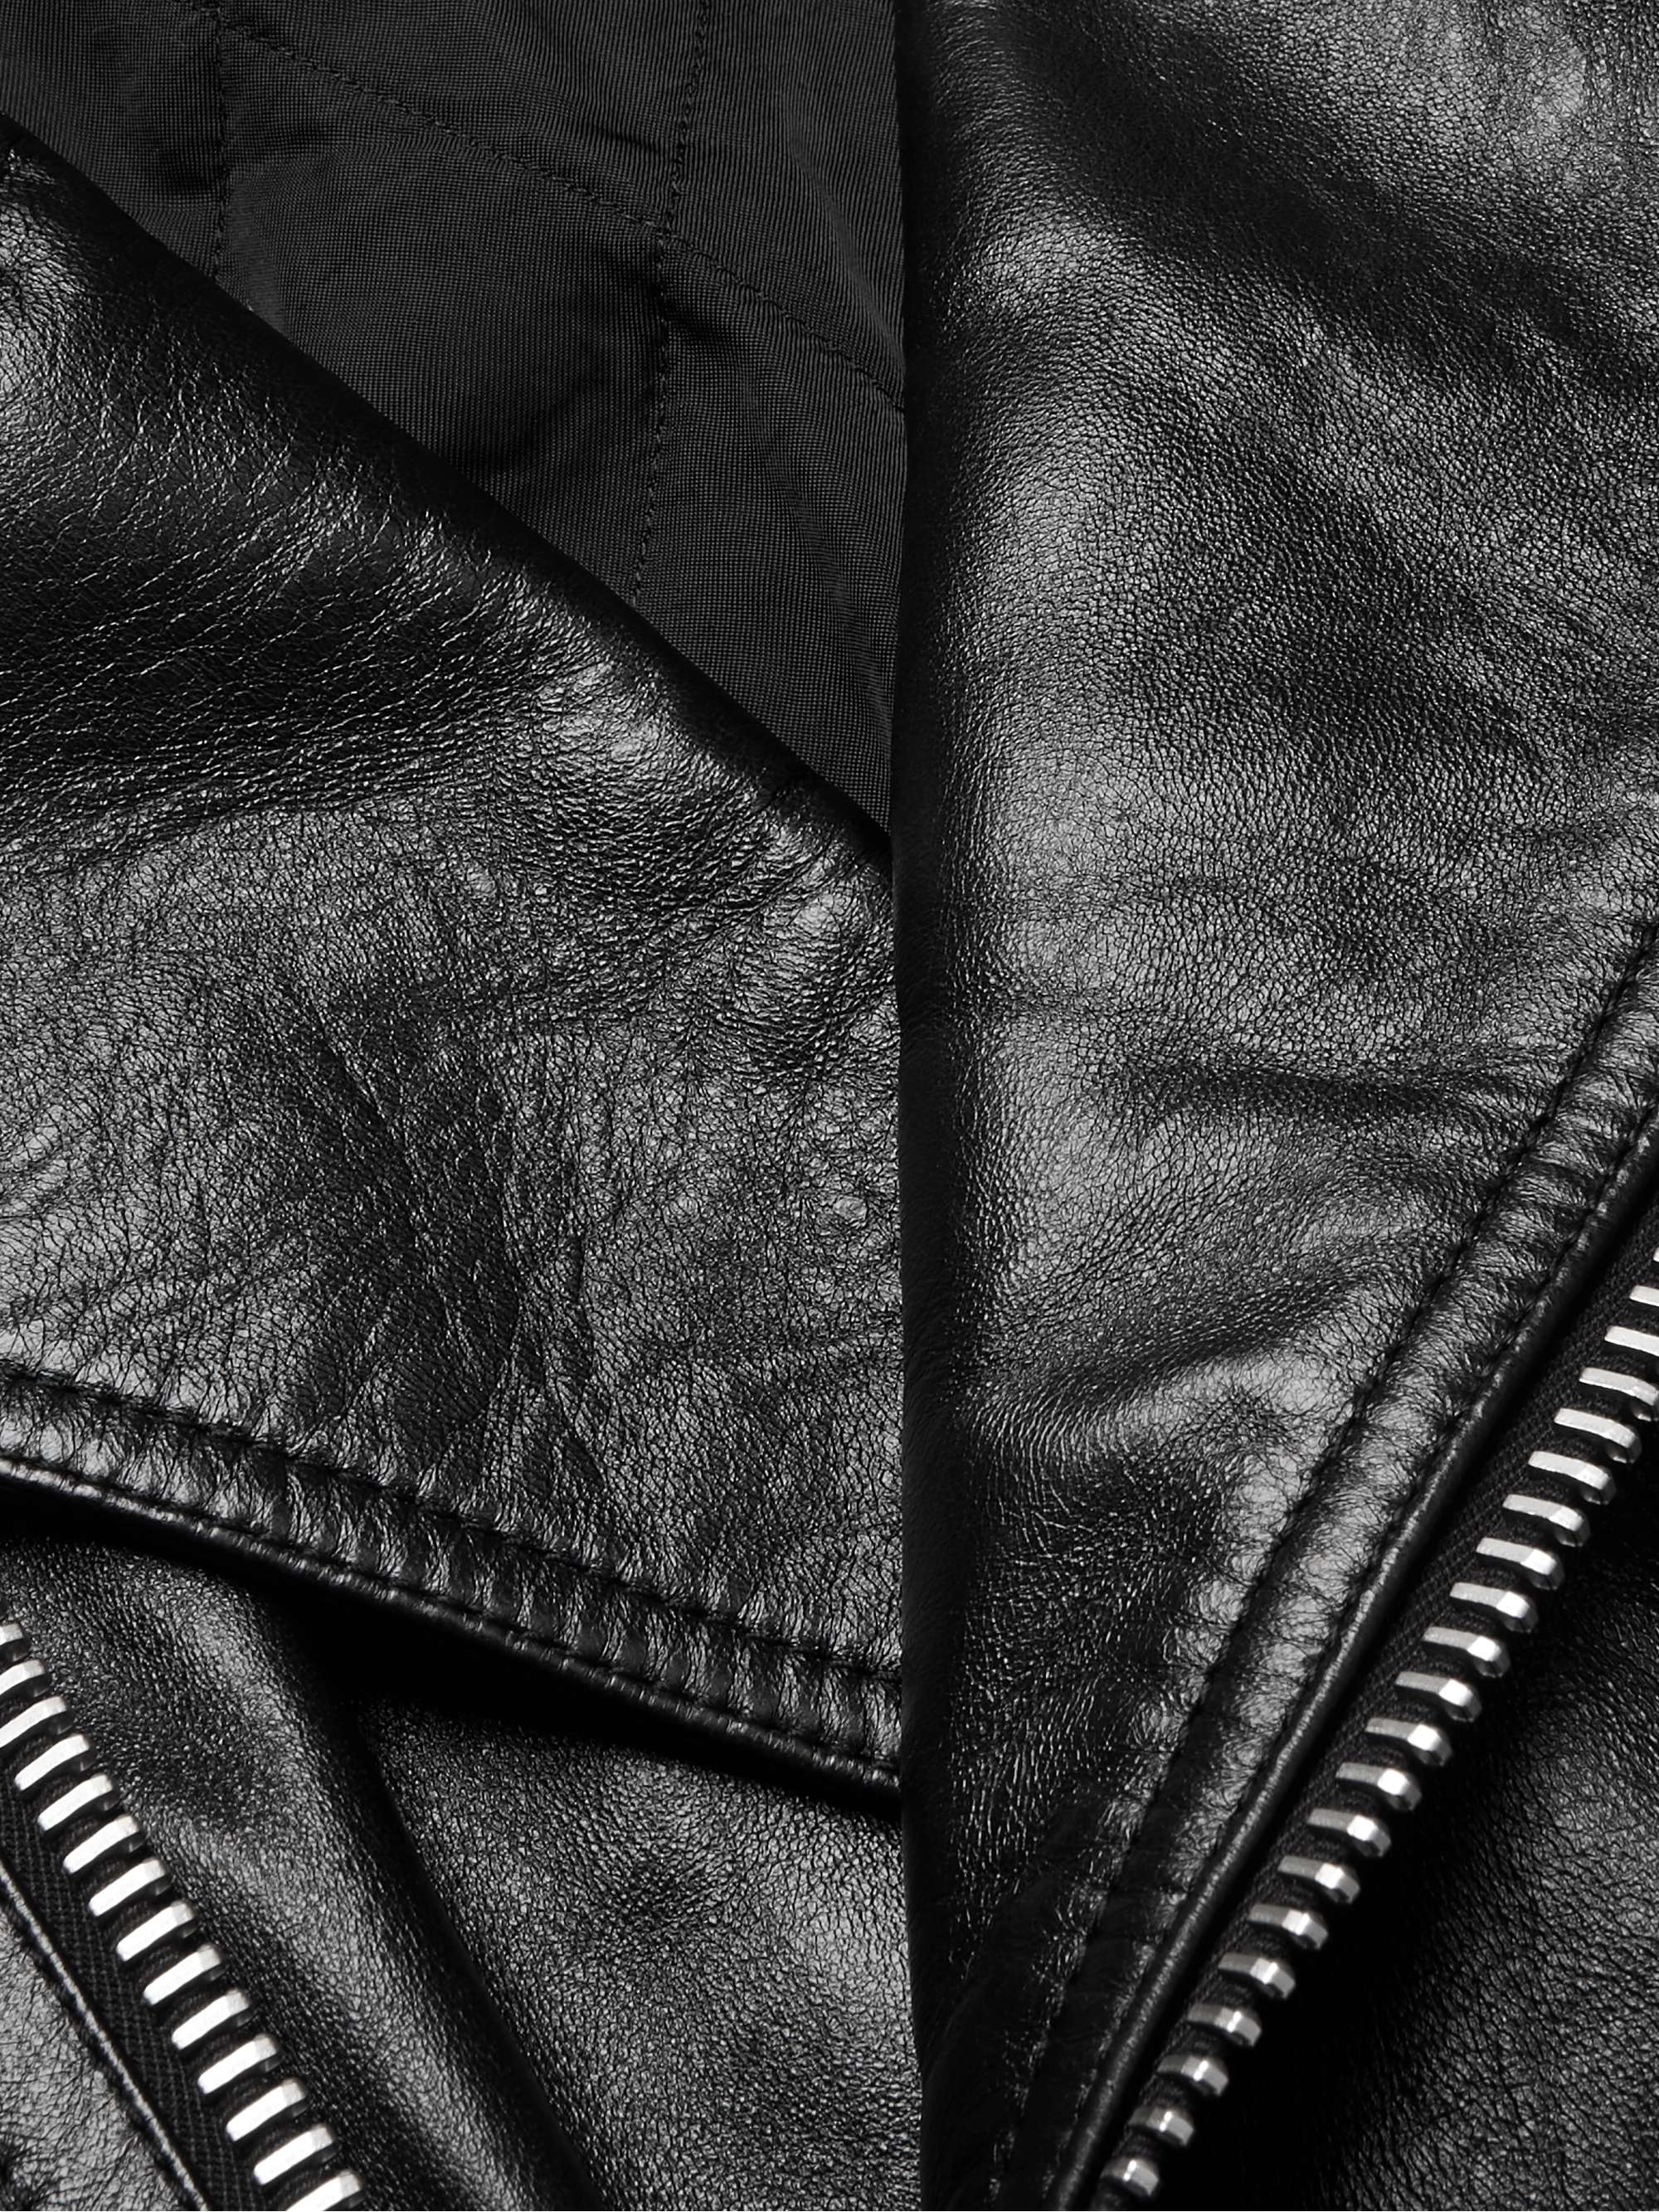 CELINE HOMME Textured-Leather Biker Jacket